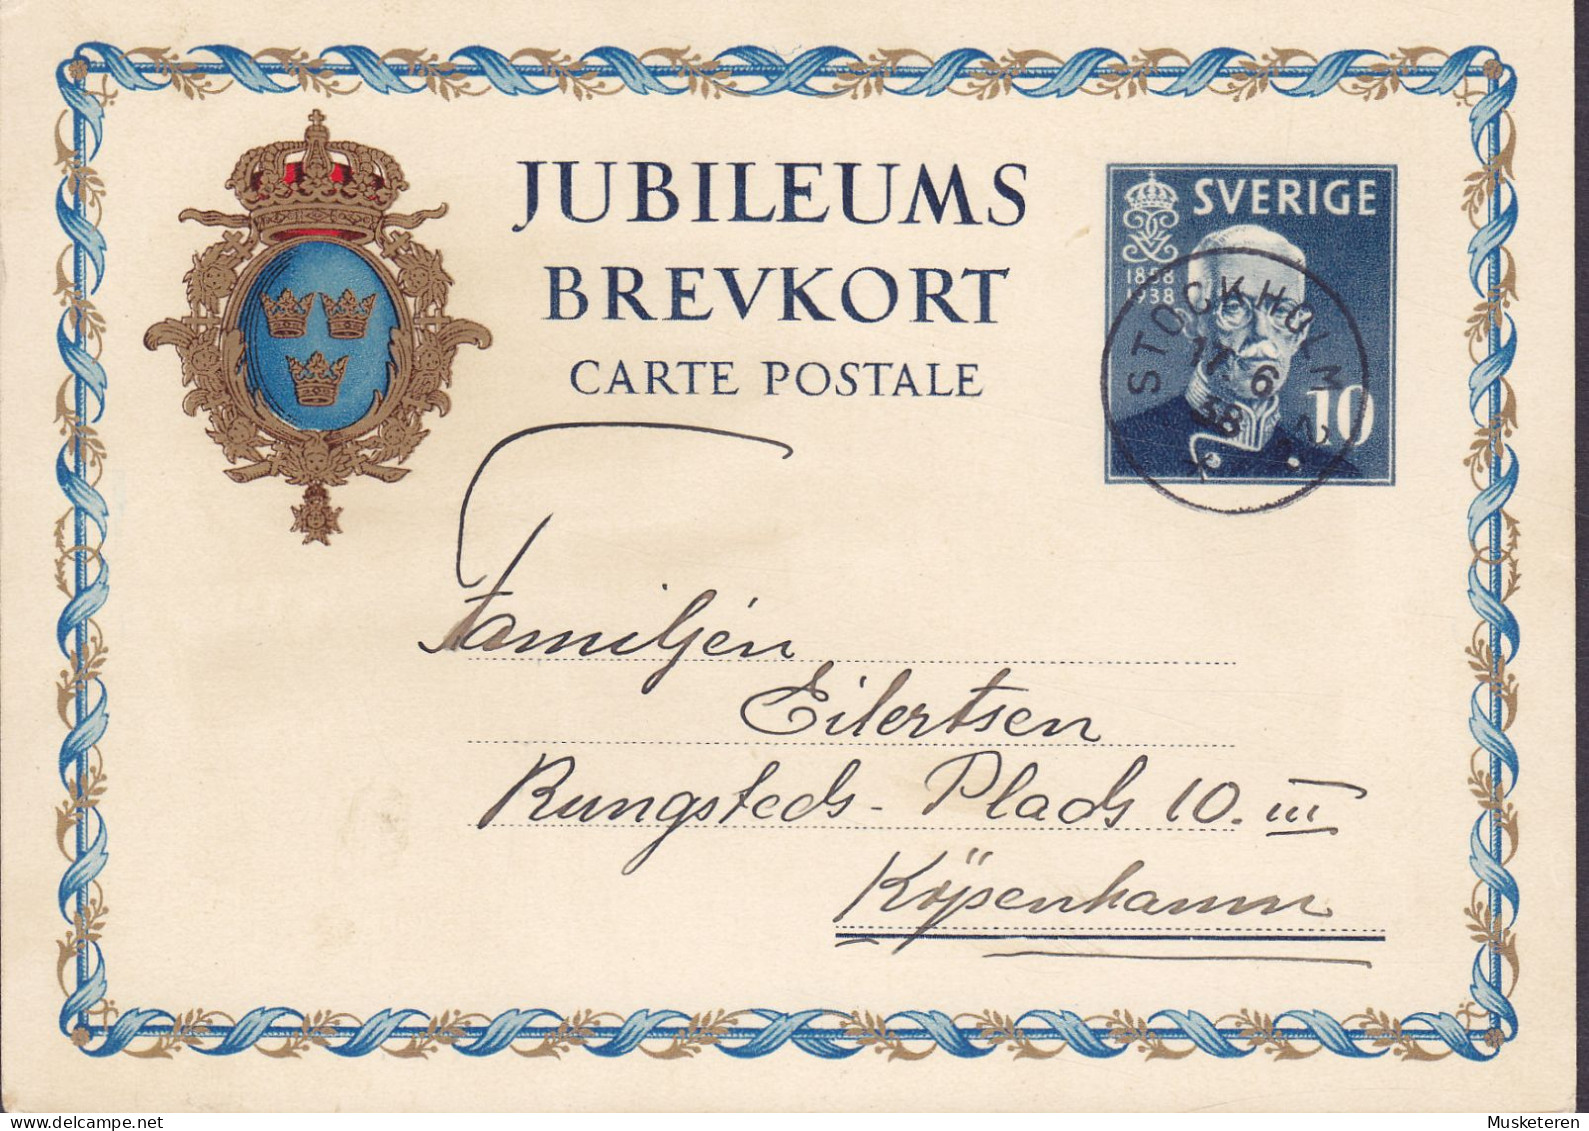 Sweden Postal Stationery Ganzsache Entier 10 Ø Jubileums Brevkort 1858-1938 STOCKHOLM 1938 KØBENHAVN Denmark - Postal Stationery